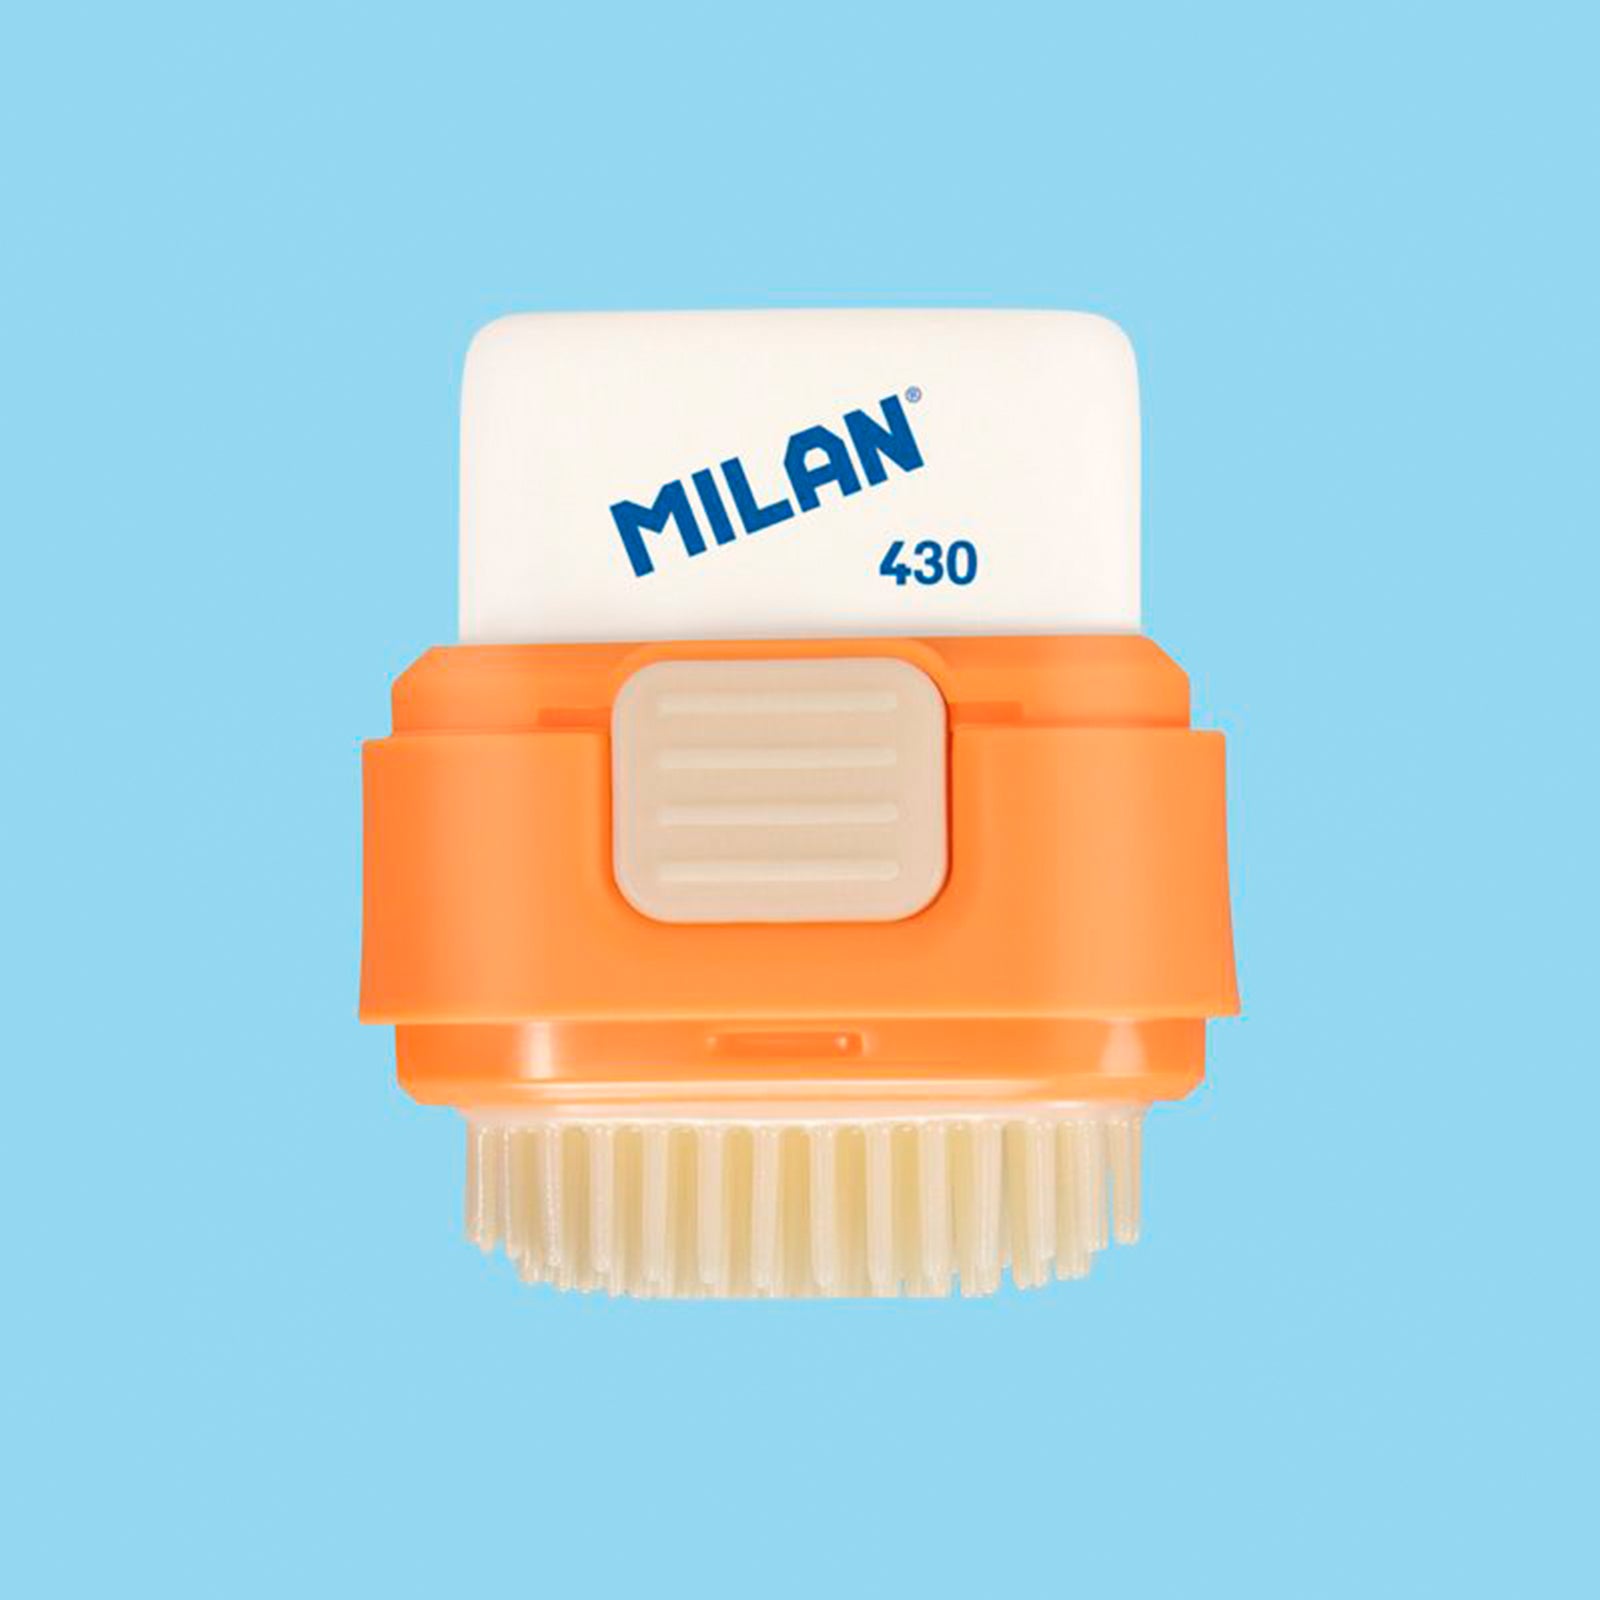 MILAN Fun Animals - Combinación de Goma y Cepillo Eraser & Brush. Surtido